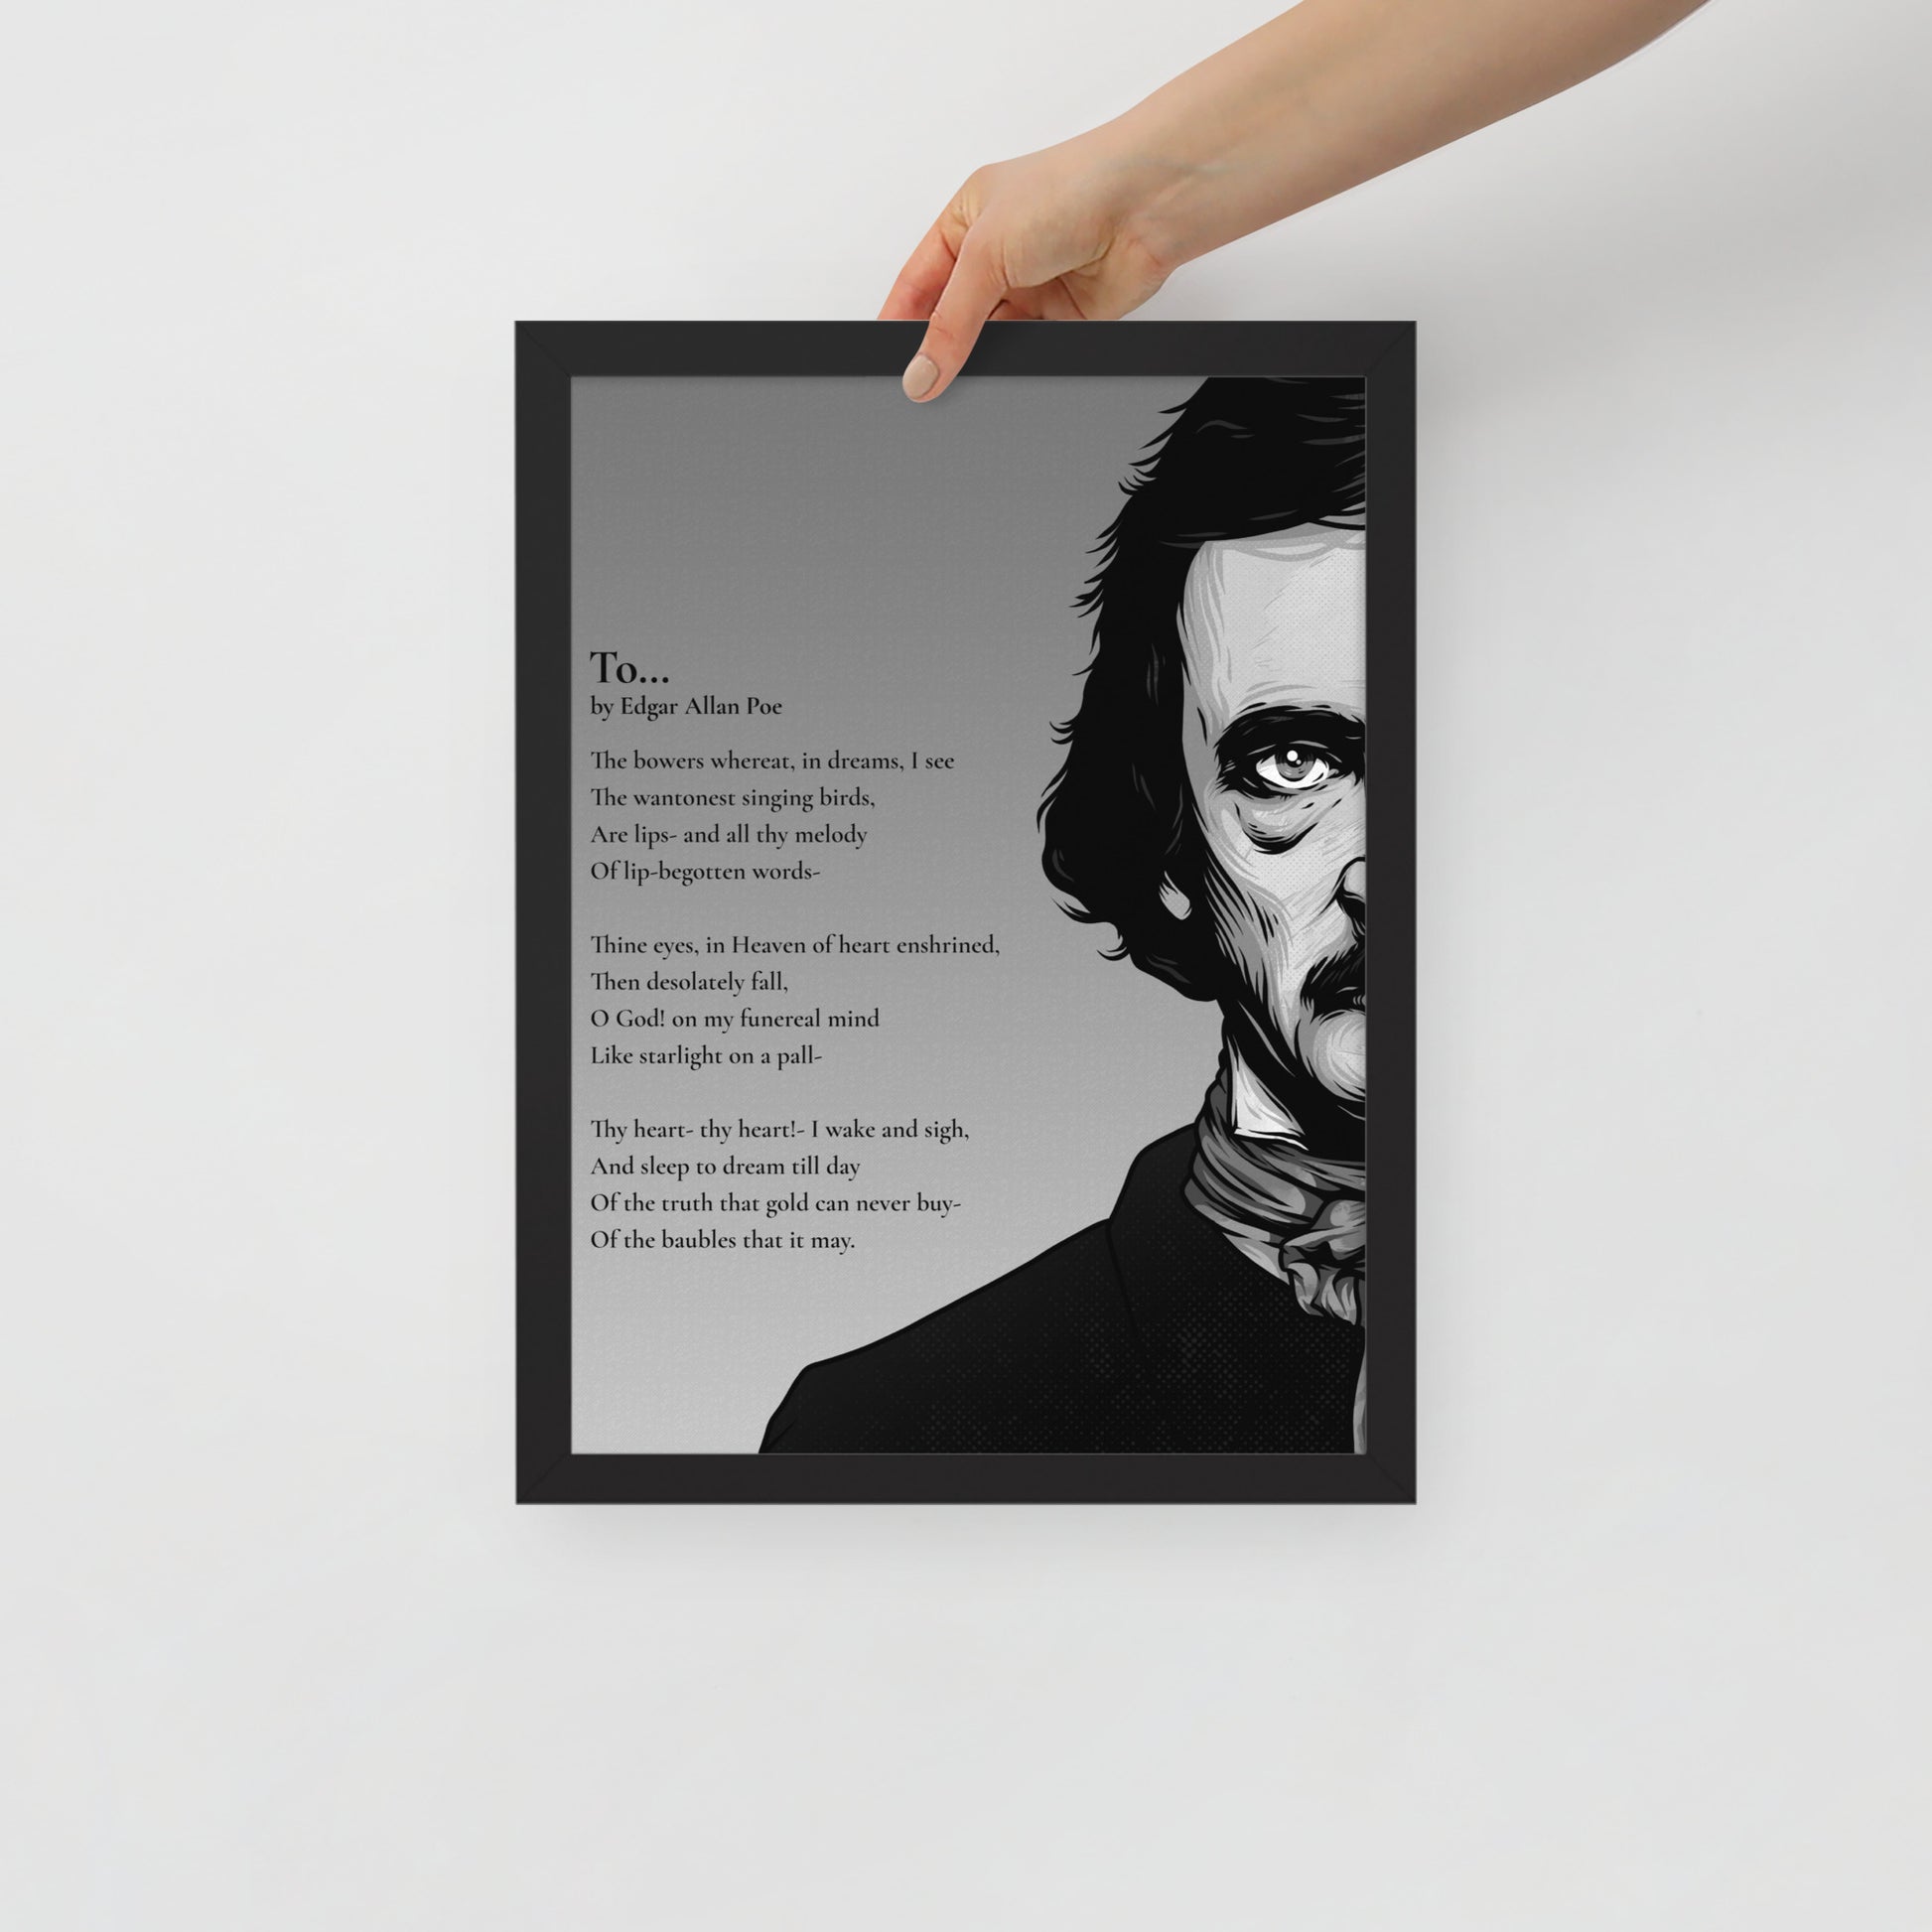 Edgar Allan Poe's 'To...' Framed Matted Poster - 12 x 16 Black Frame